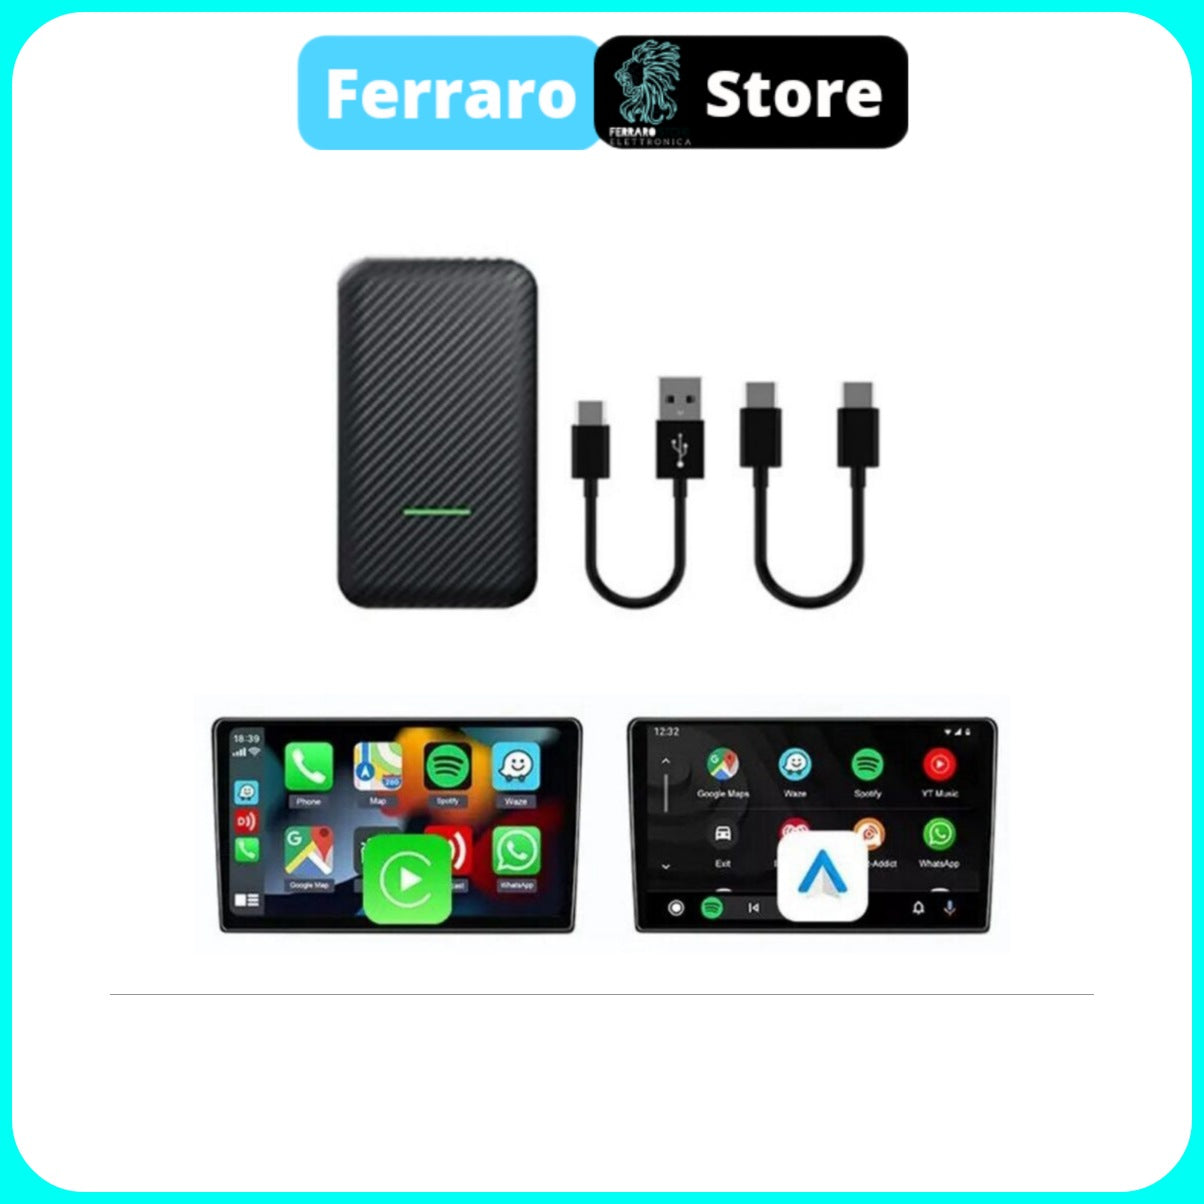 Scatoletta Adattatore Box - Carplay & Android Auto, da Cablato a Wirel –  Ferraro Store